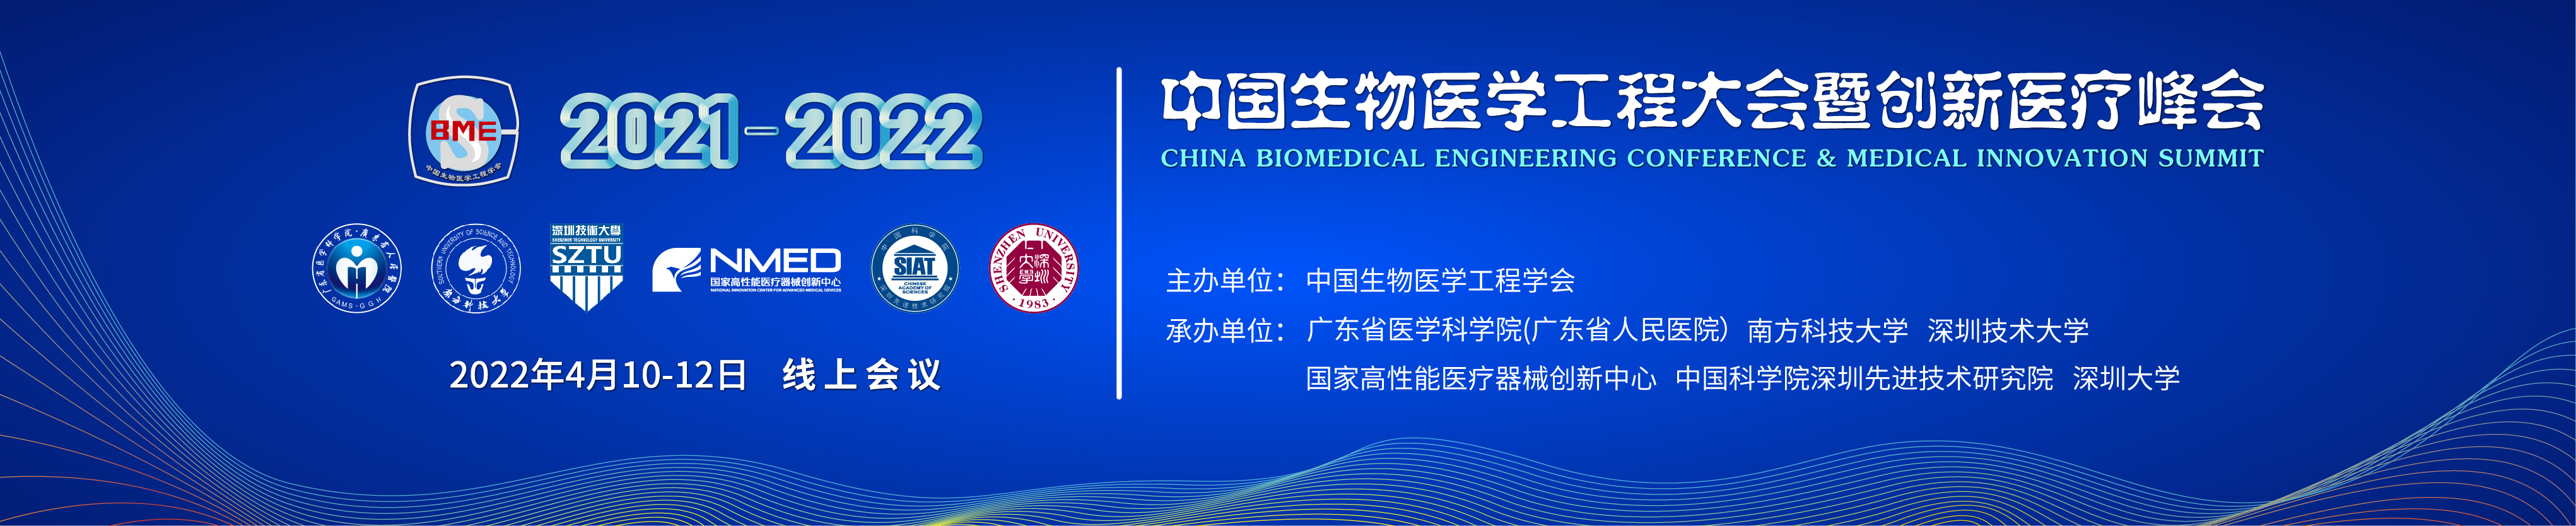 2021-2022中国生物医学工程大会暨创新医疗峰会（BME2021-2022）